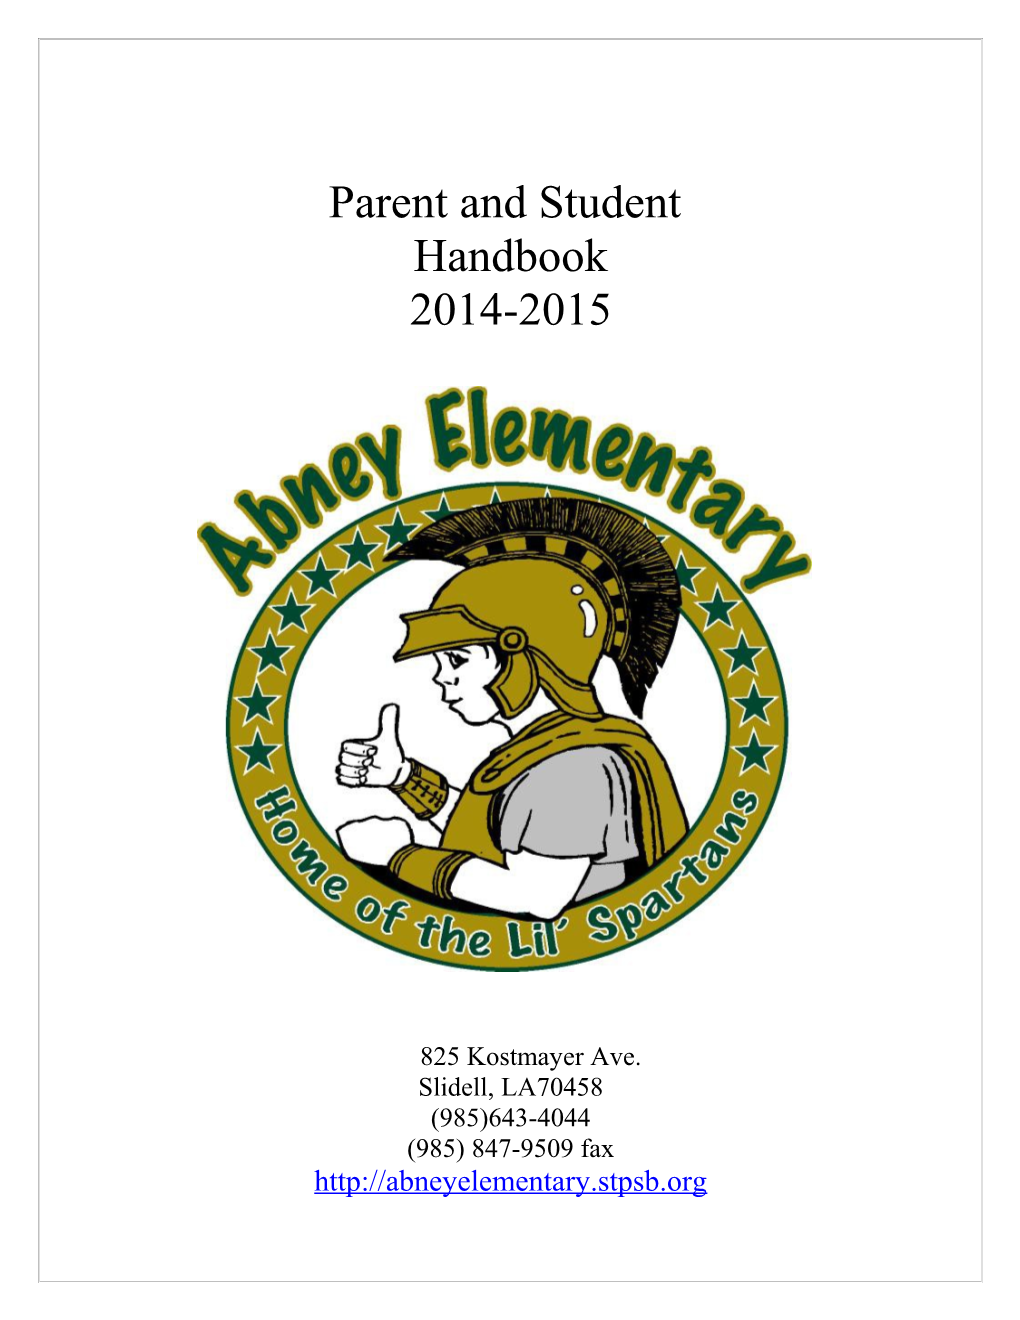 Dear Families of Abney Elementary